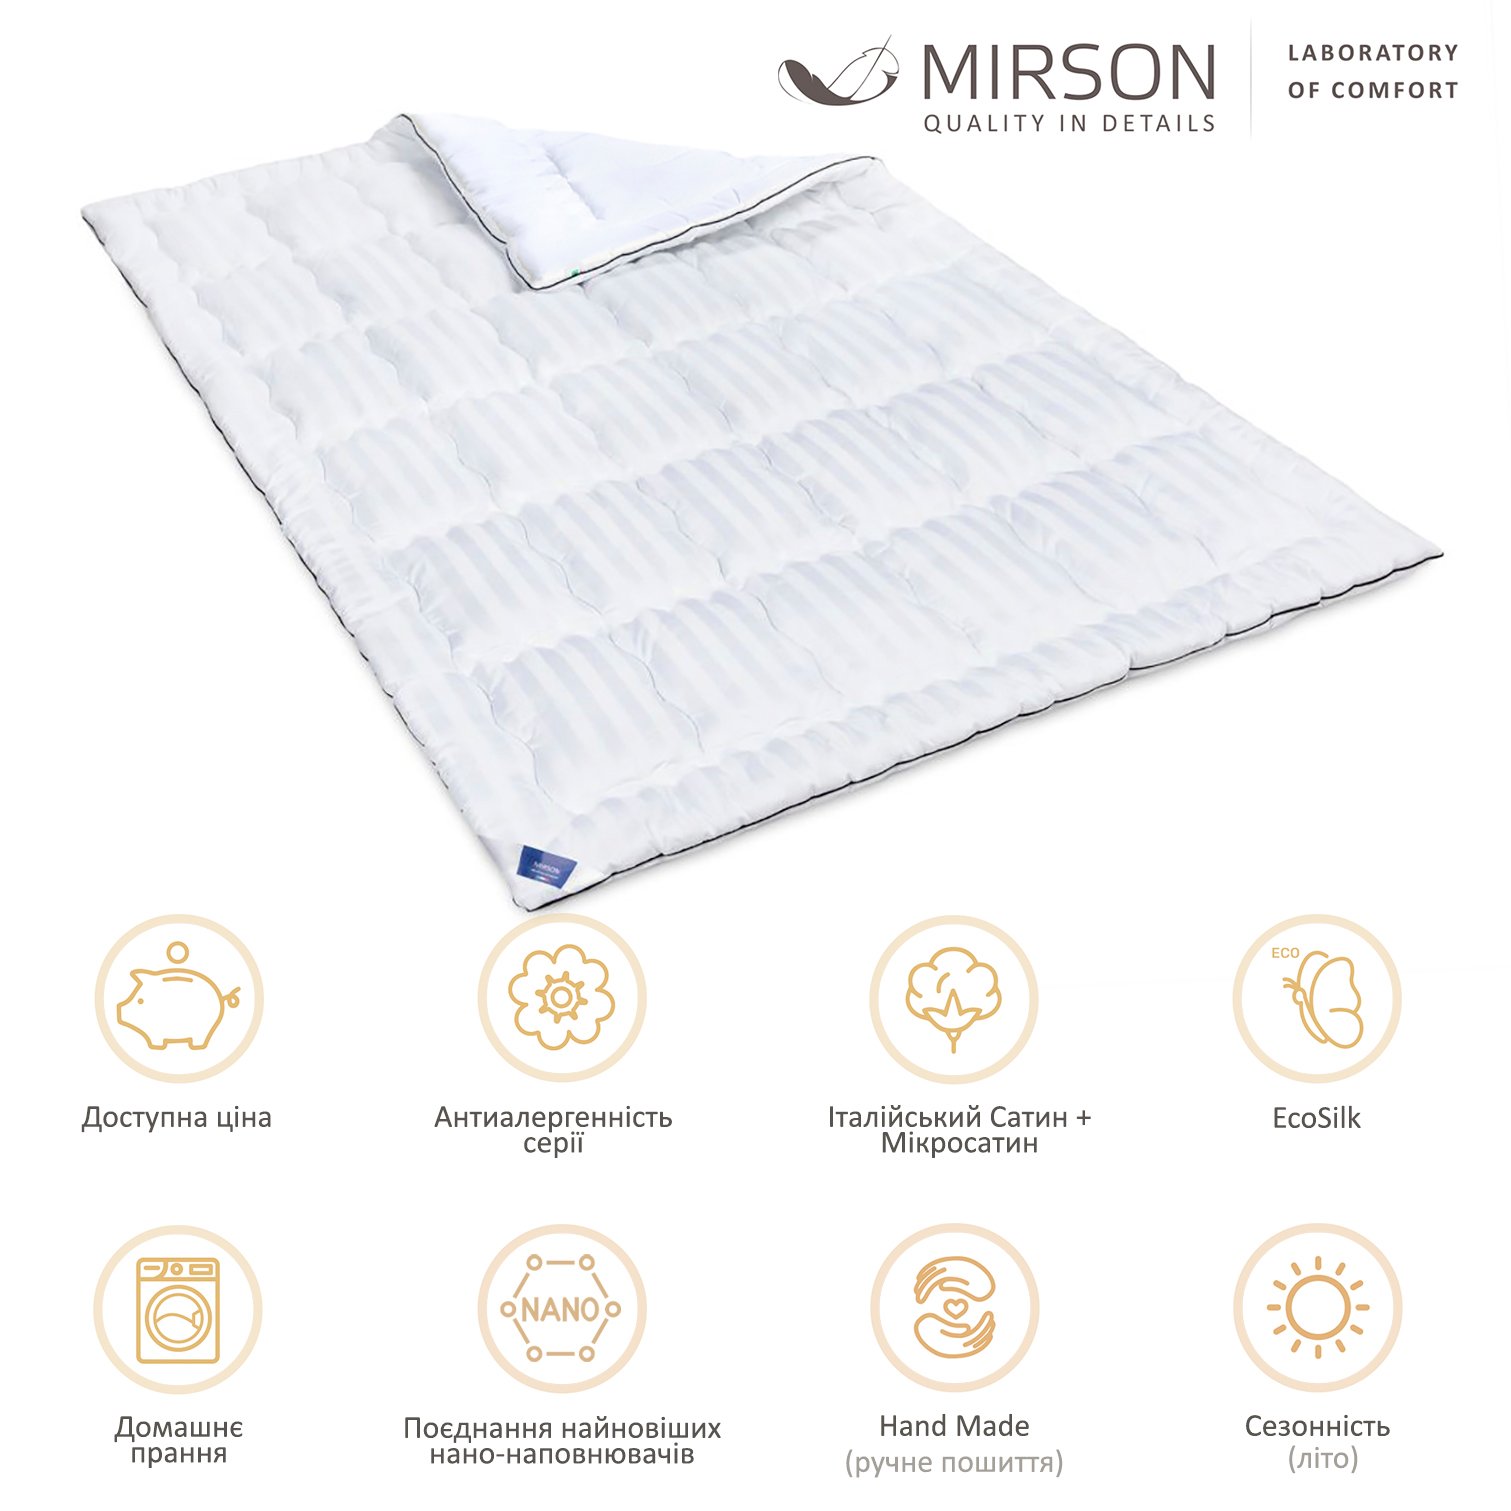 Одеяло антиаллергенное MirSon Royal Pearl Hand Made EcoSilk №1305, летнее, 172x205 см, белое (237054013) - фото 5